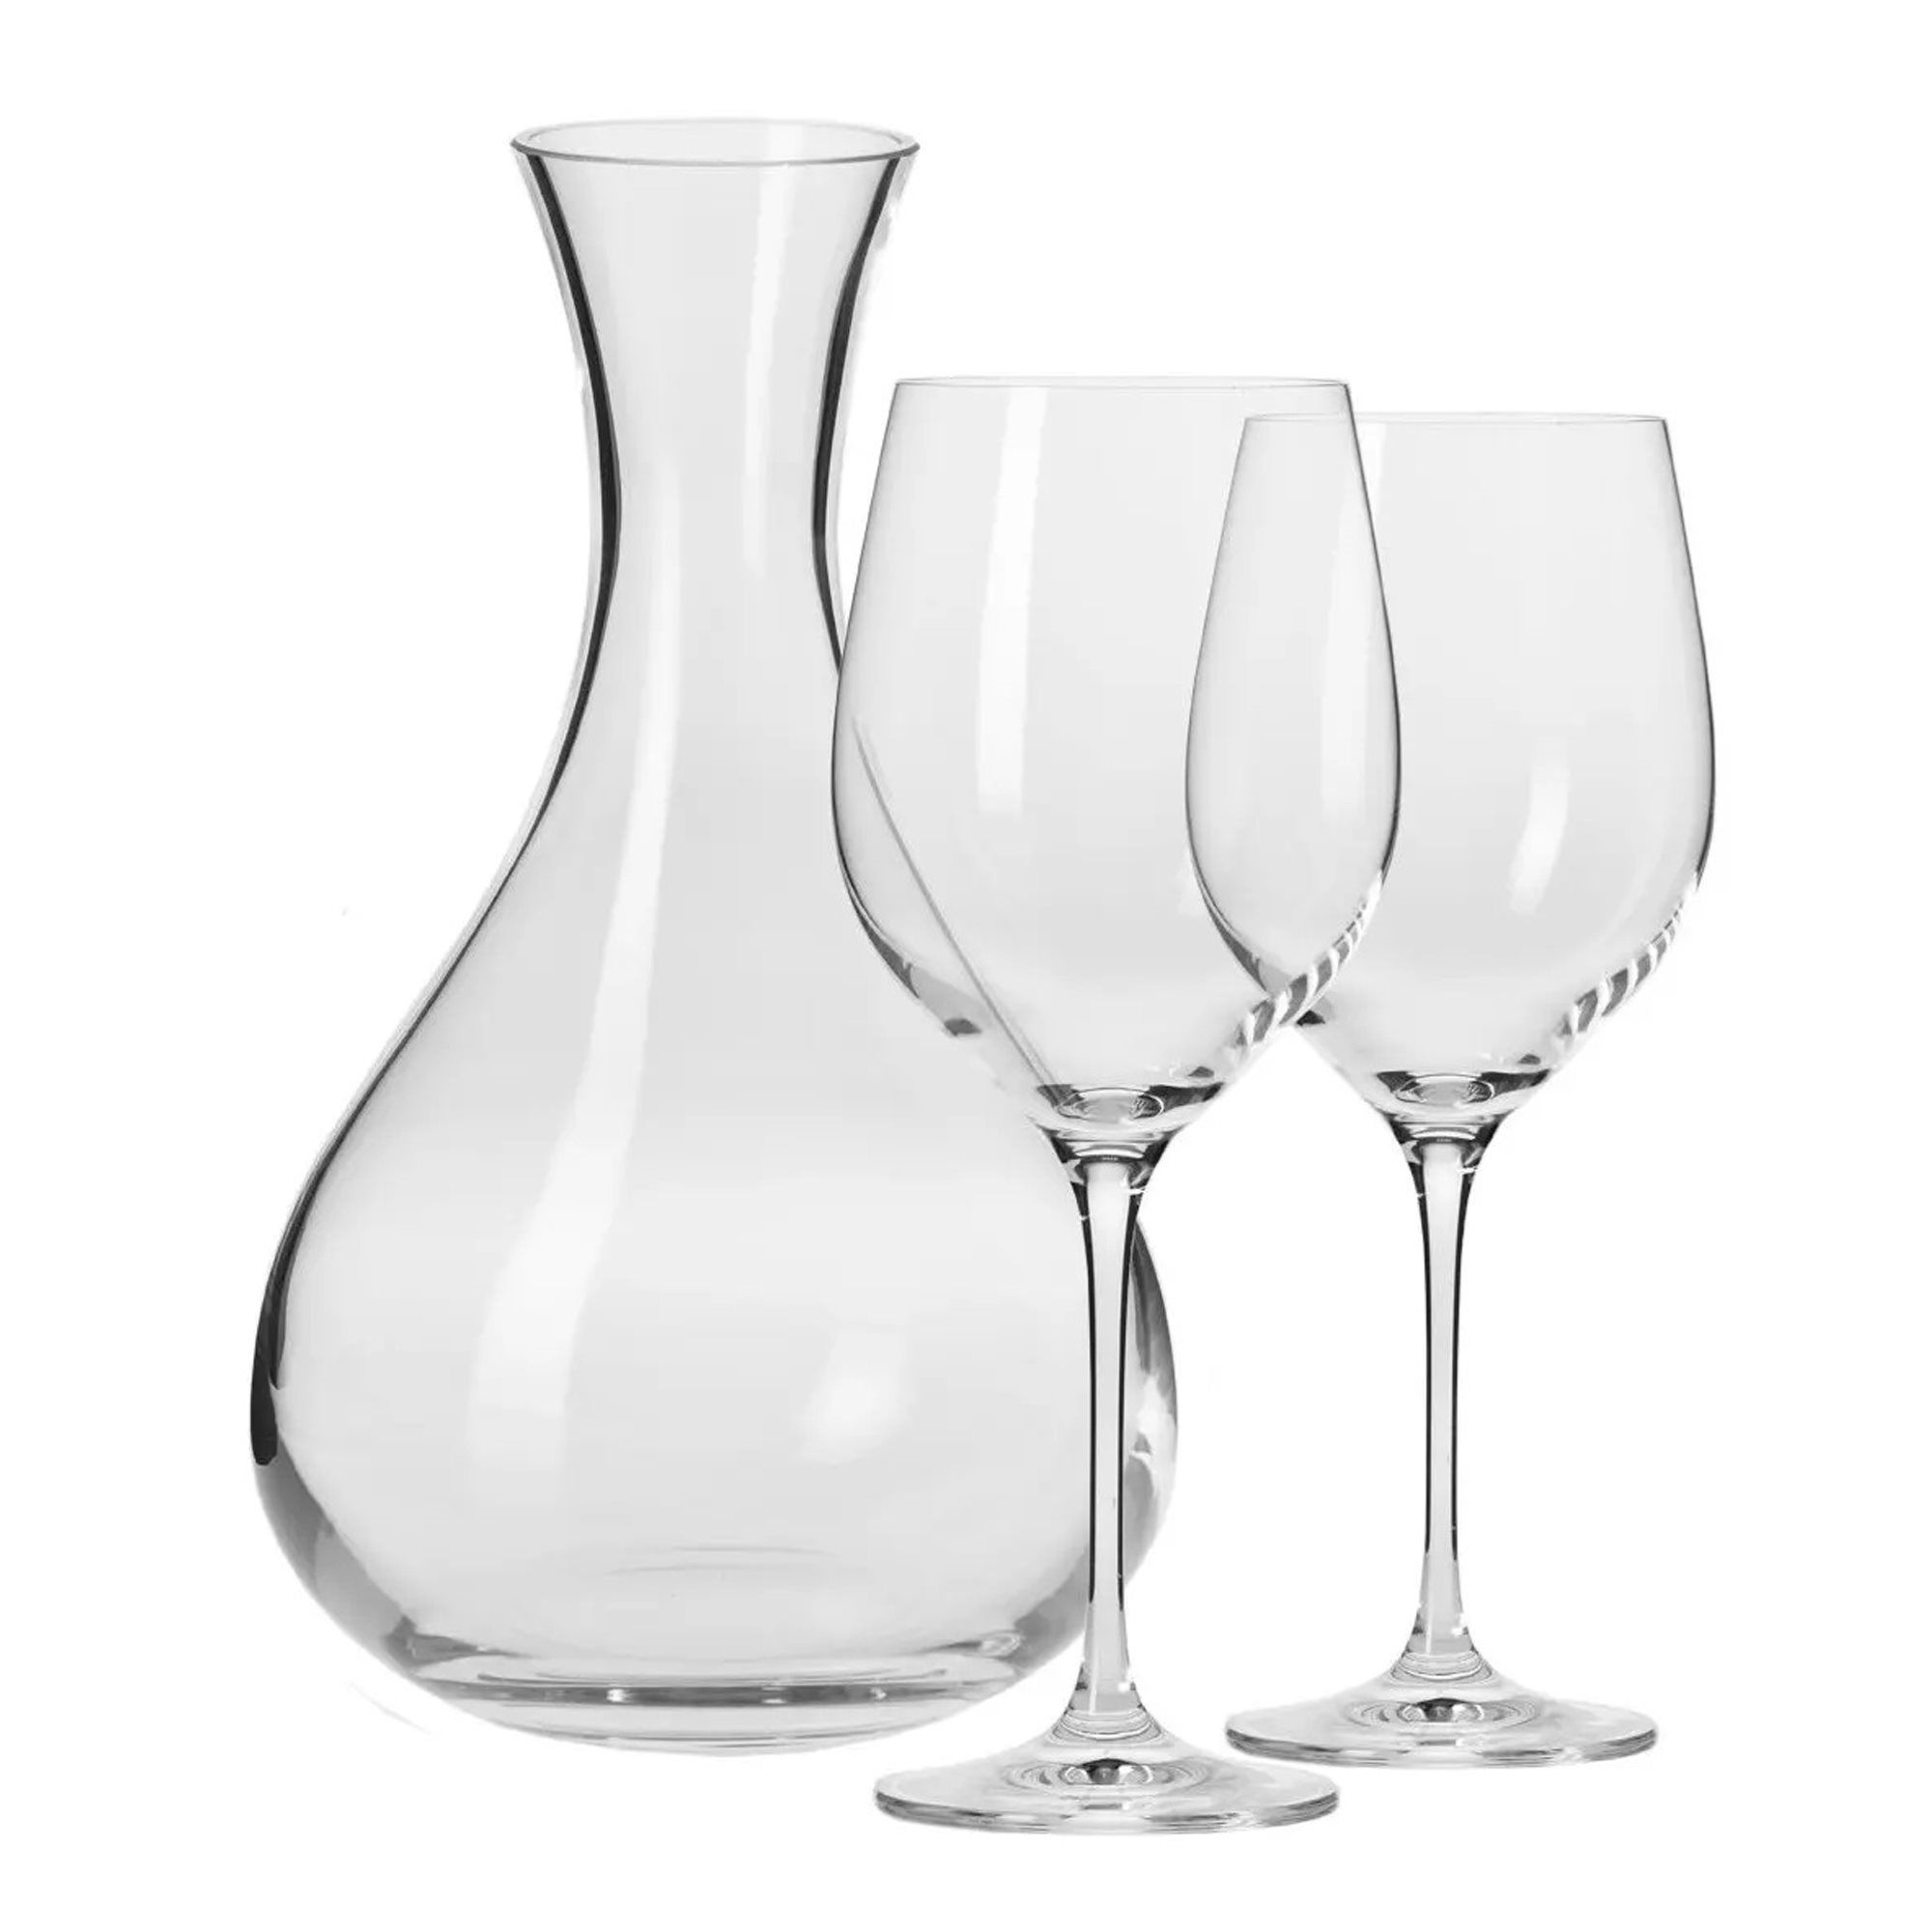 Krosno Glassware  Brilliance in glass since 1923